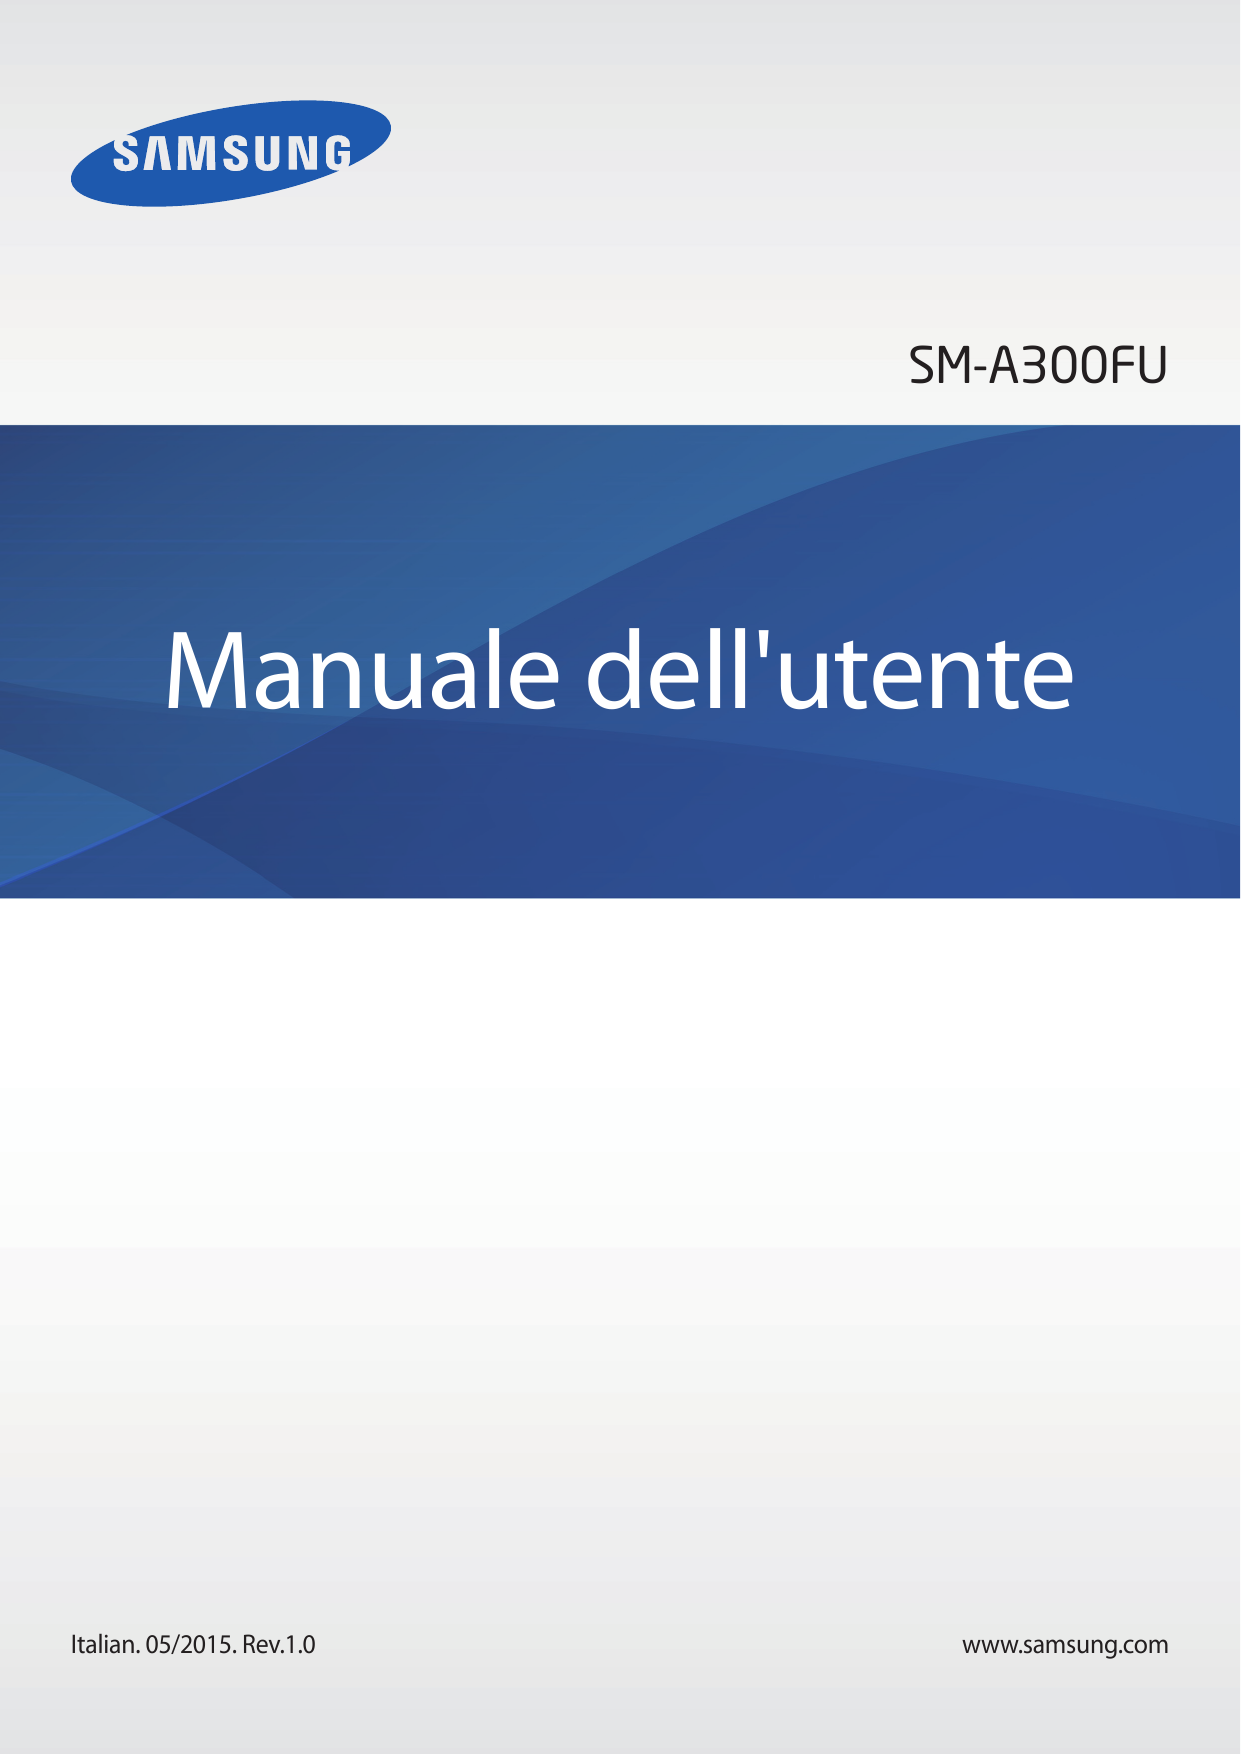 SM-A300FUManuale dell'utenteItalian. 05/2015. Rev.1.0www.samsung.com